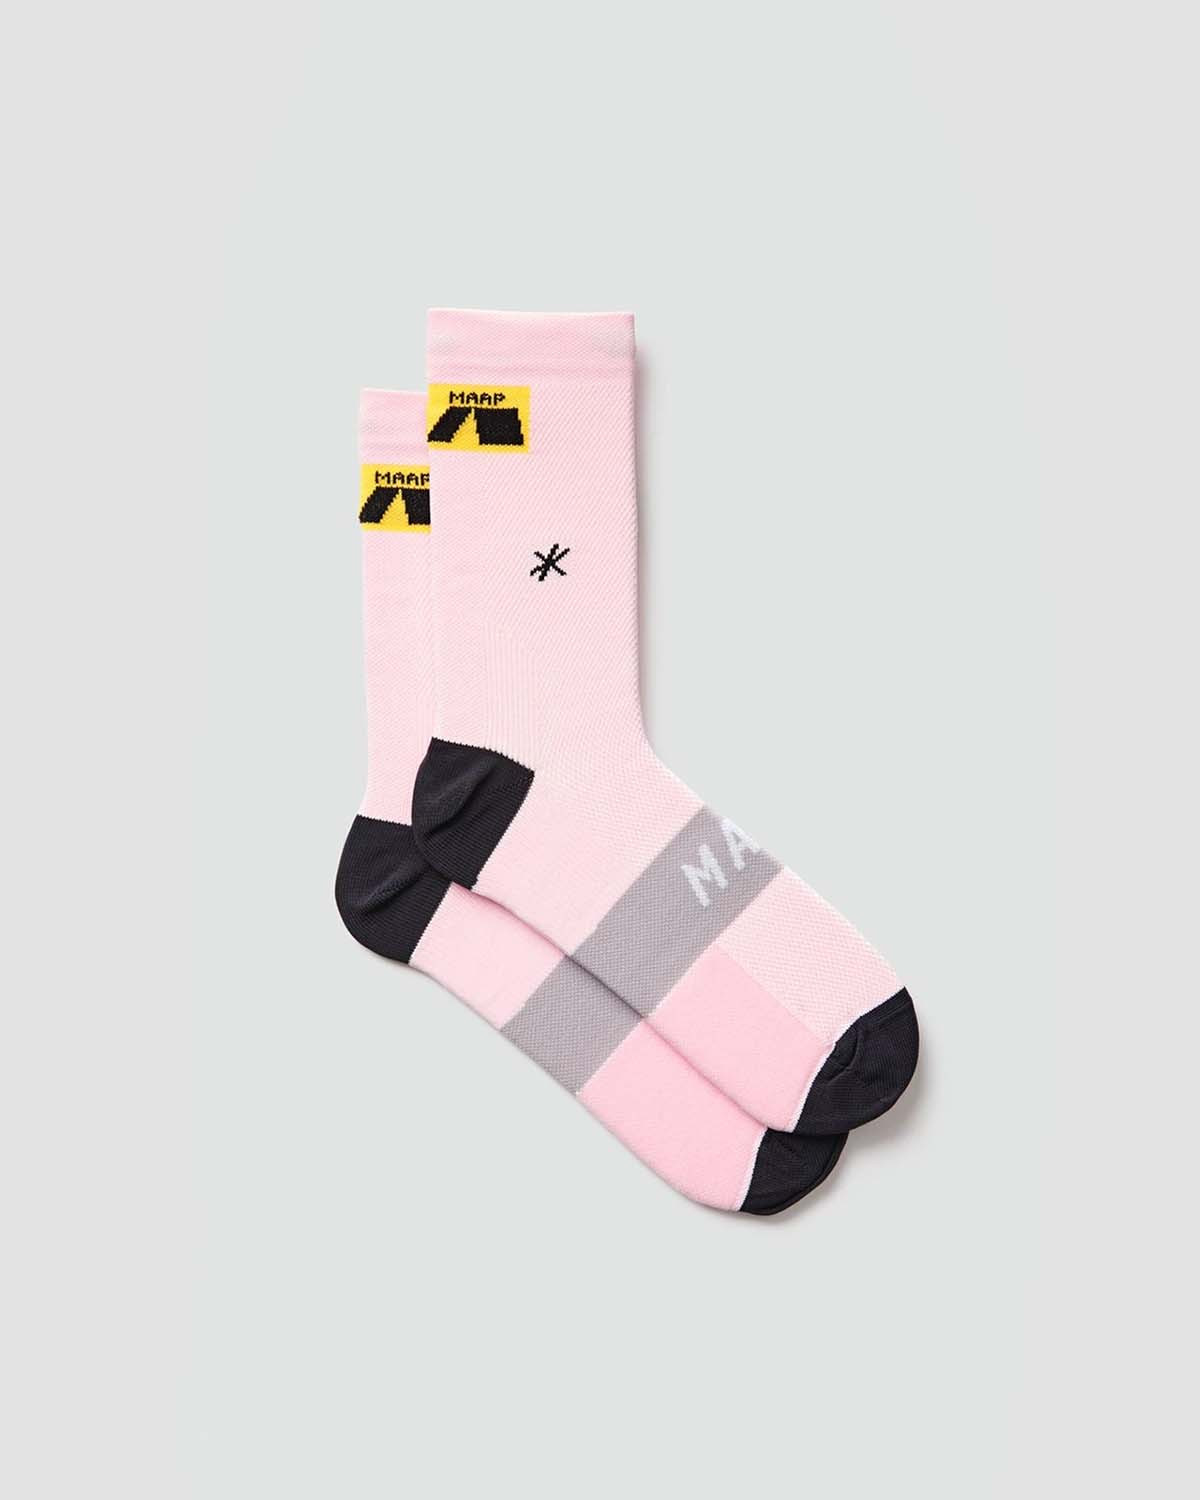 Maap Axis Socks - Pale Pink